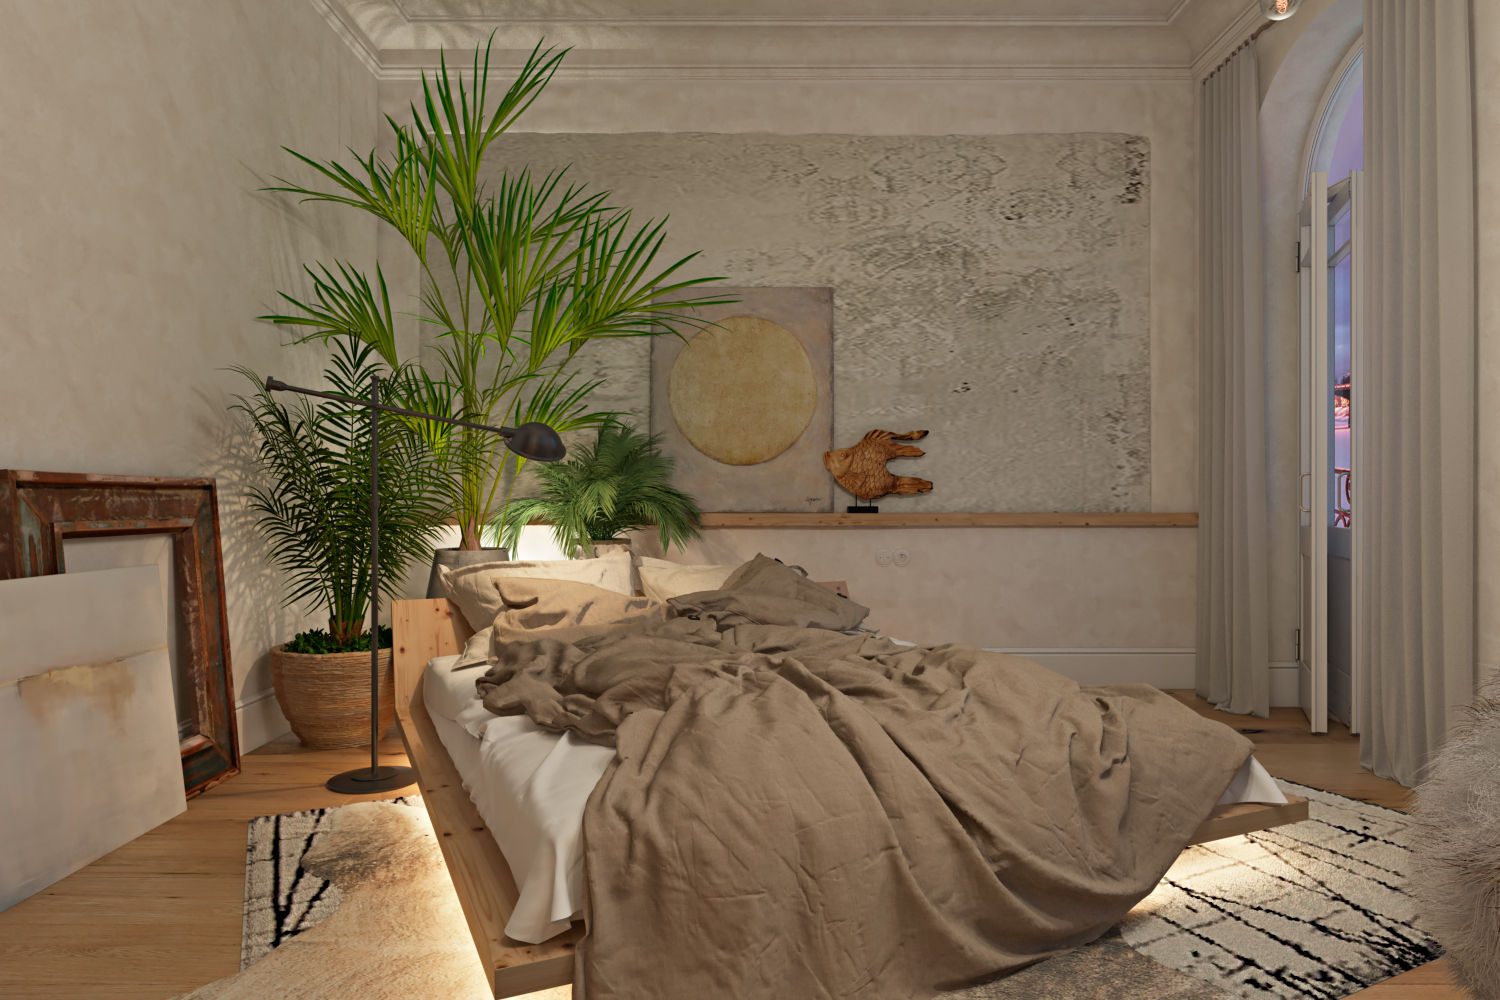 Сны о Канчанабури Москва 2016, Анна Морозова Анна Морозова Tropical style bedroom